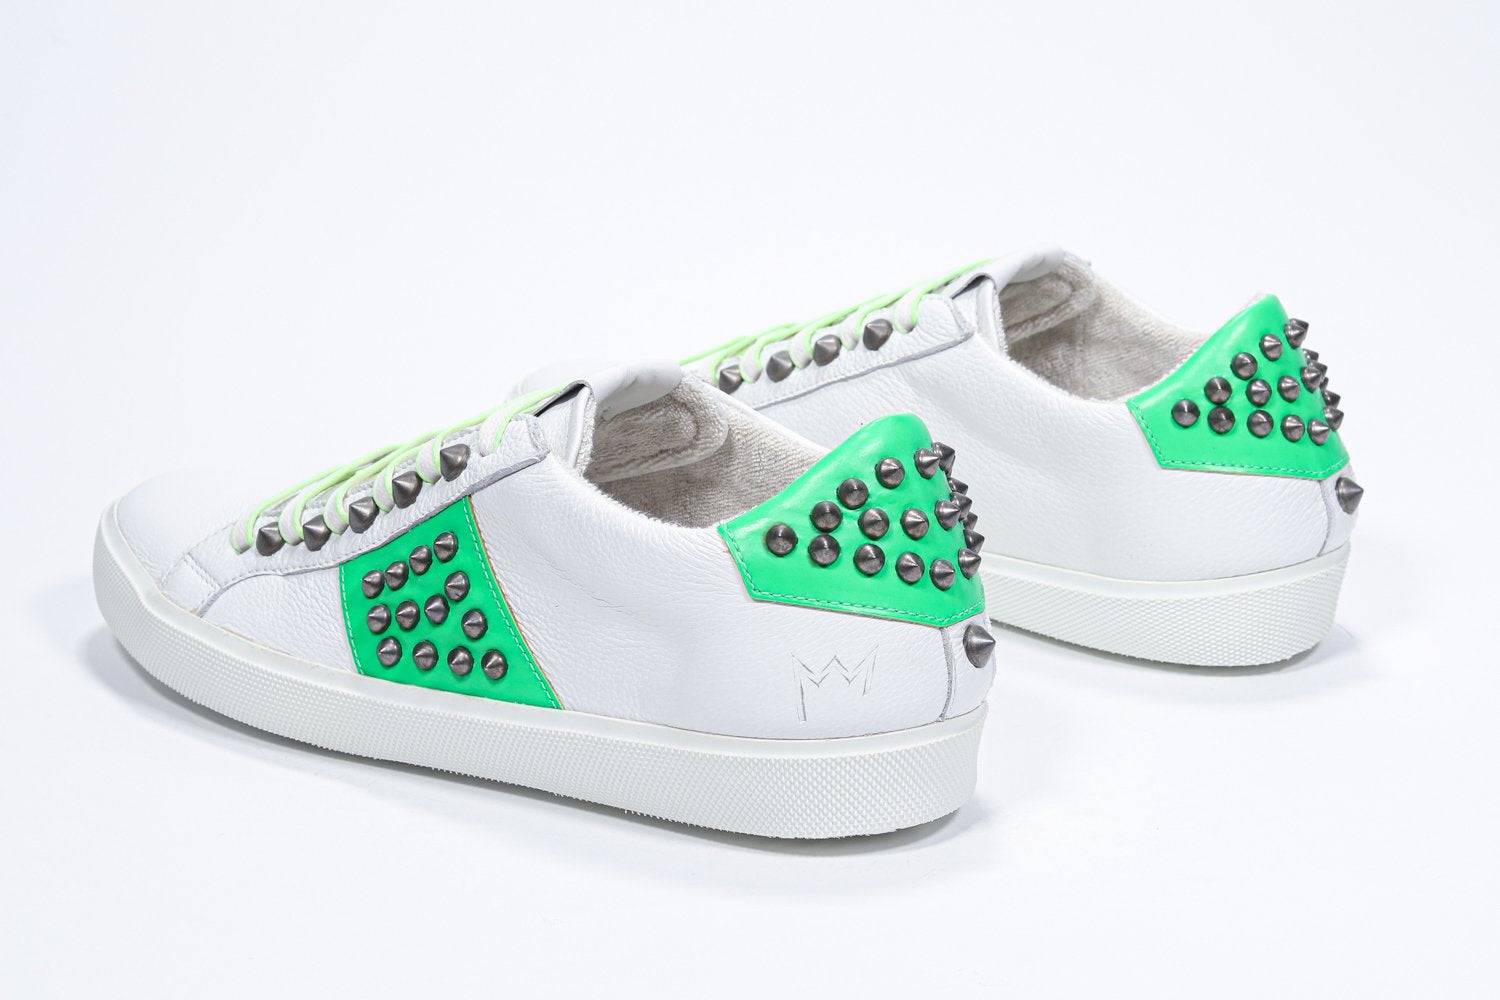 Vue de trois quarts arrière d'un modèle bas blanc et vert fluo sneaker. Tige en cuir avec clous et semelle en caoutchouc blanc.